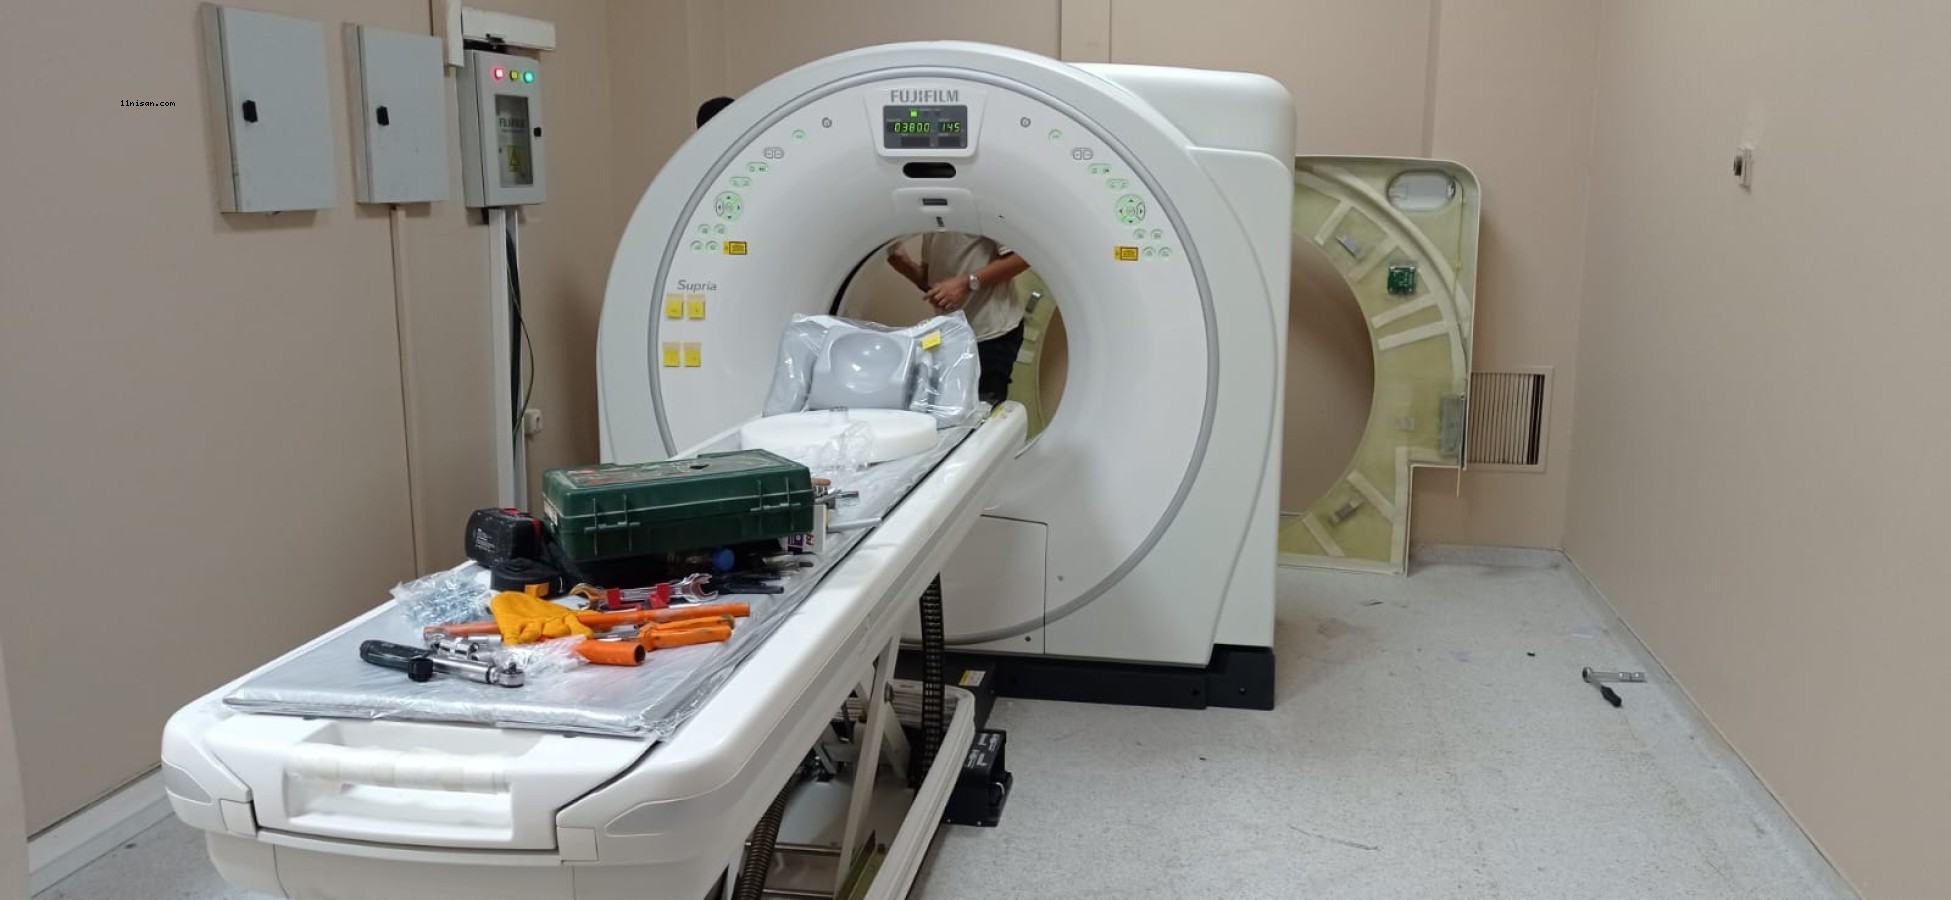 Acil servis iki tomografi cihazı ile hizmet verecek;